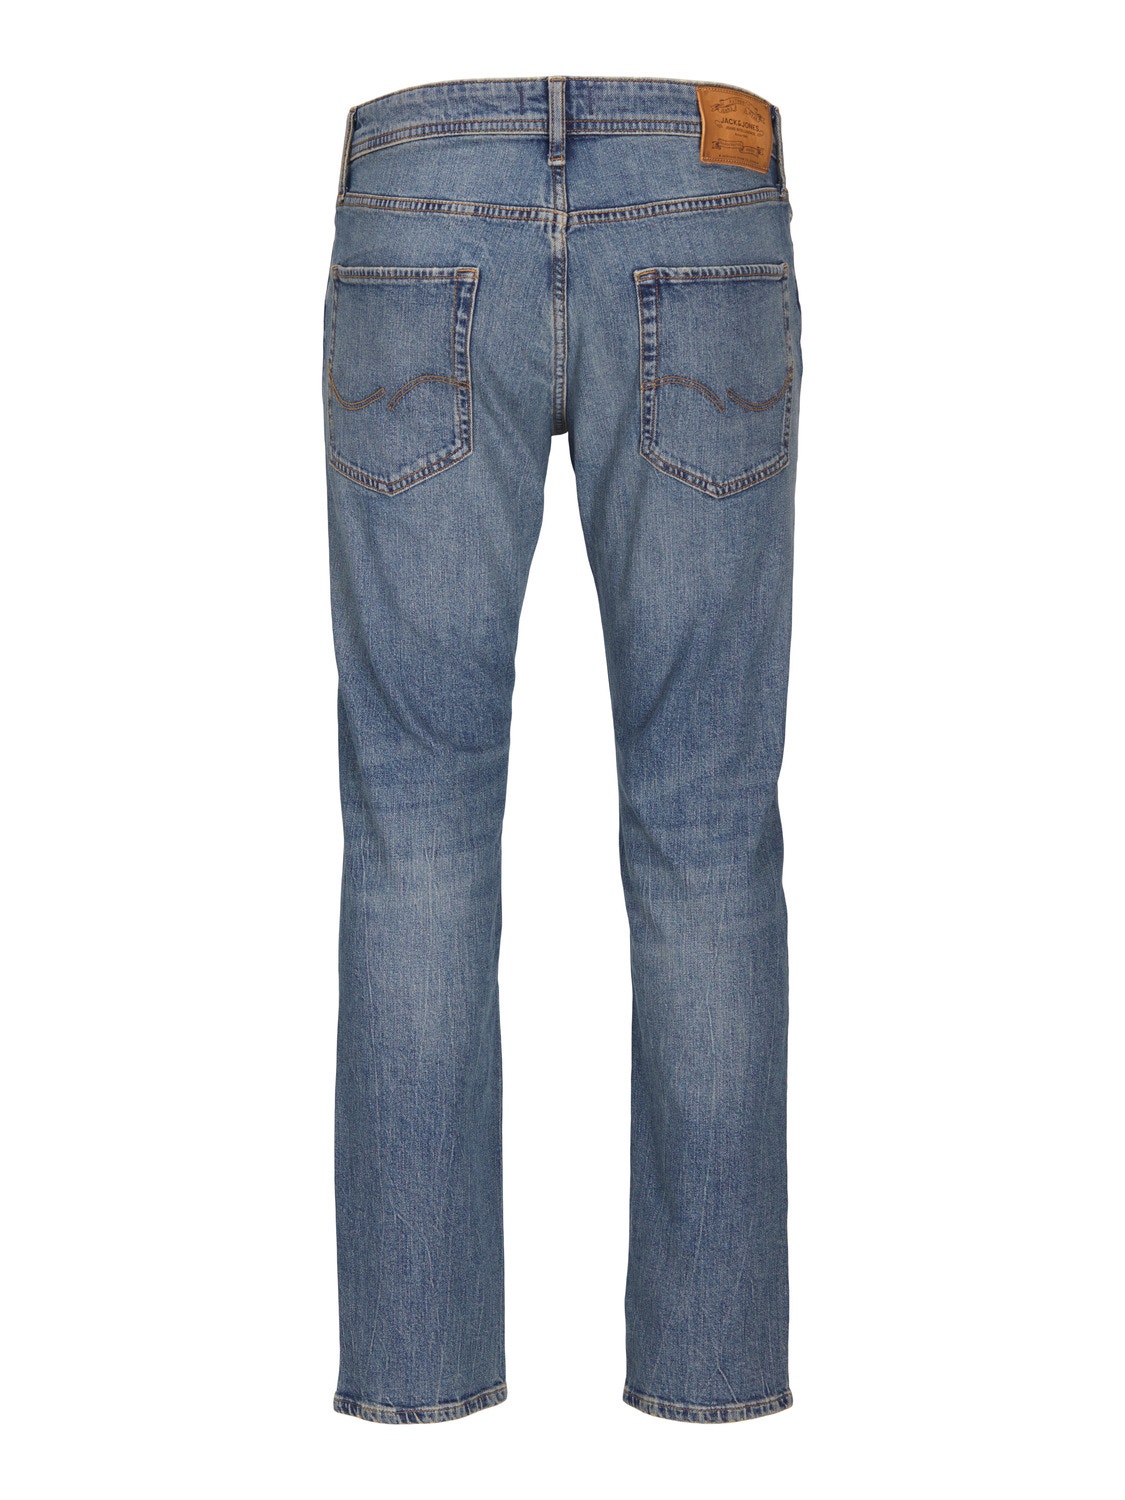 Jack & Jones JJIMIKE JJORIGINAL SBD 552 Jeans Tapered Fit -Blue Denim - 12252832